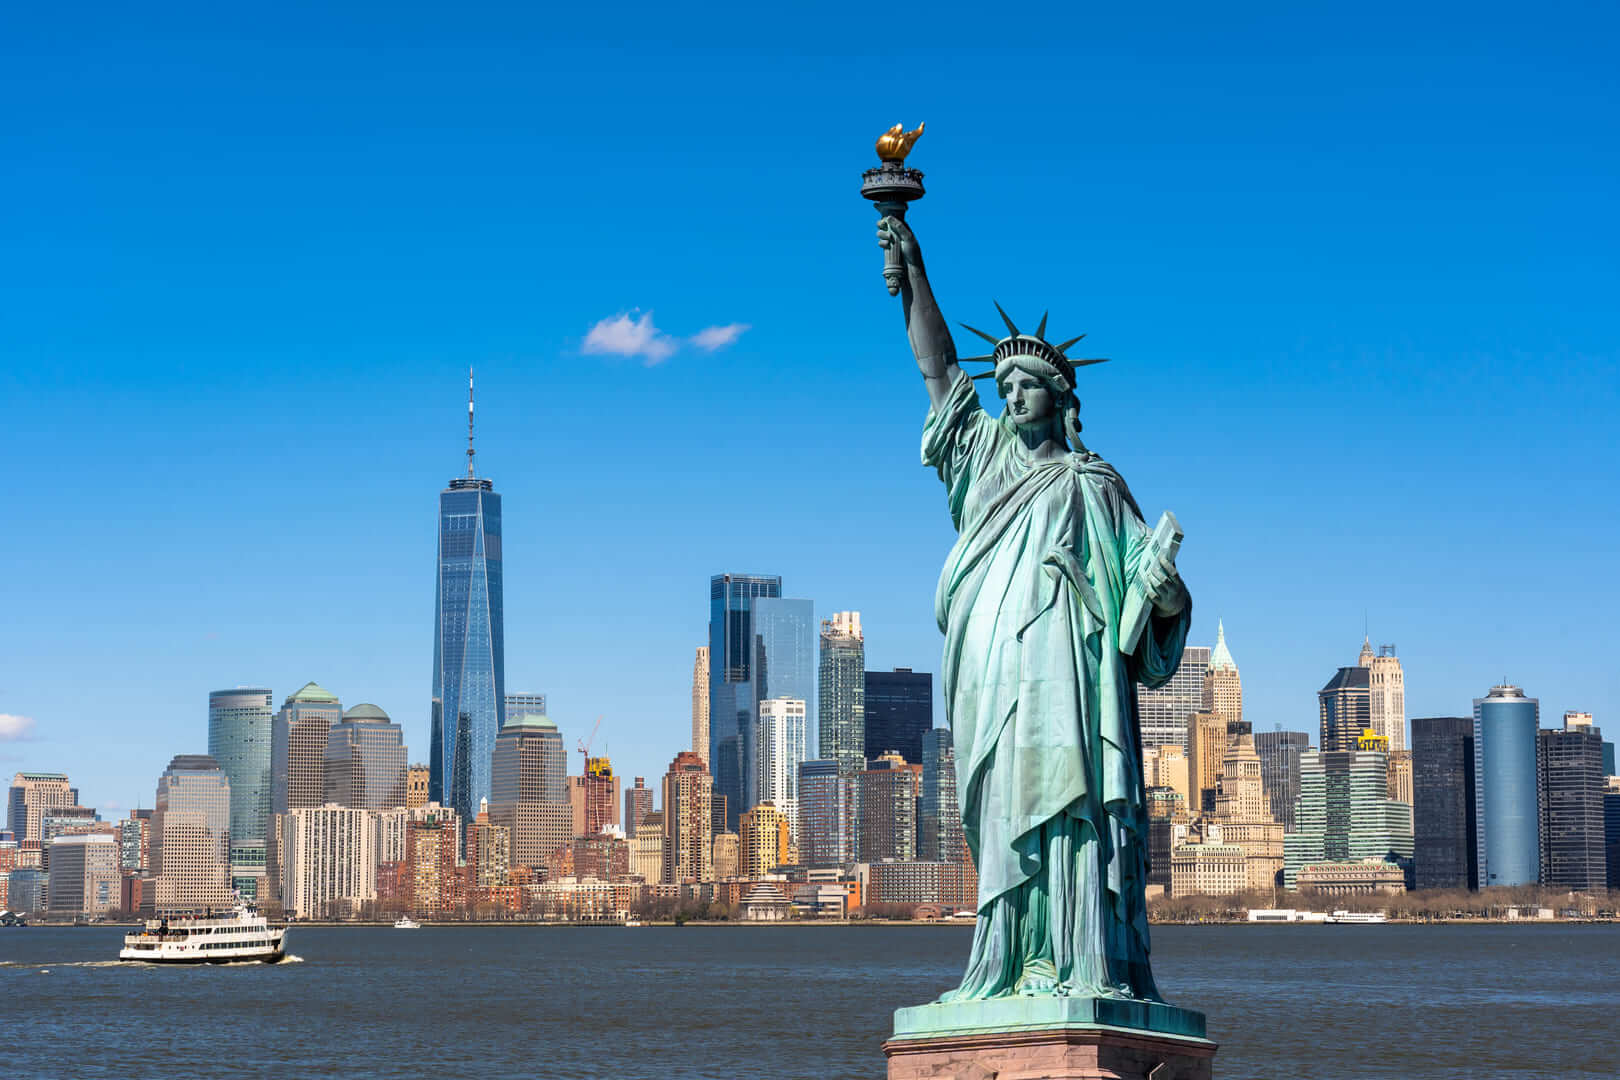 La statua della libertà sopra la scena di New York cityscape lato fiume che posizione è Lower Manhattan, architettura e costruzione con concetto turistico